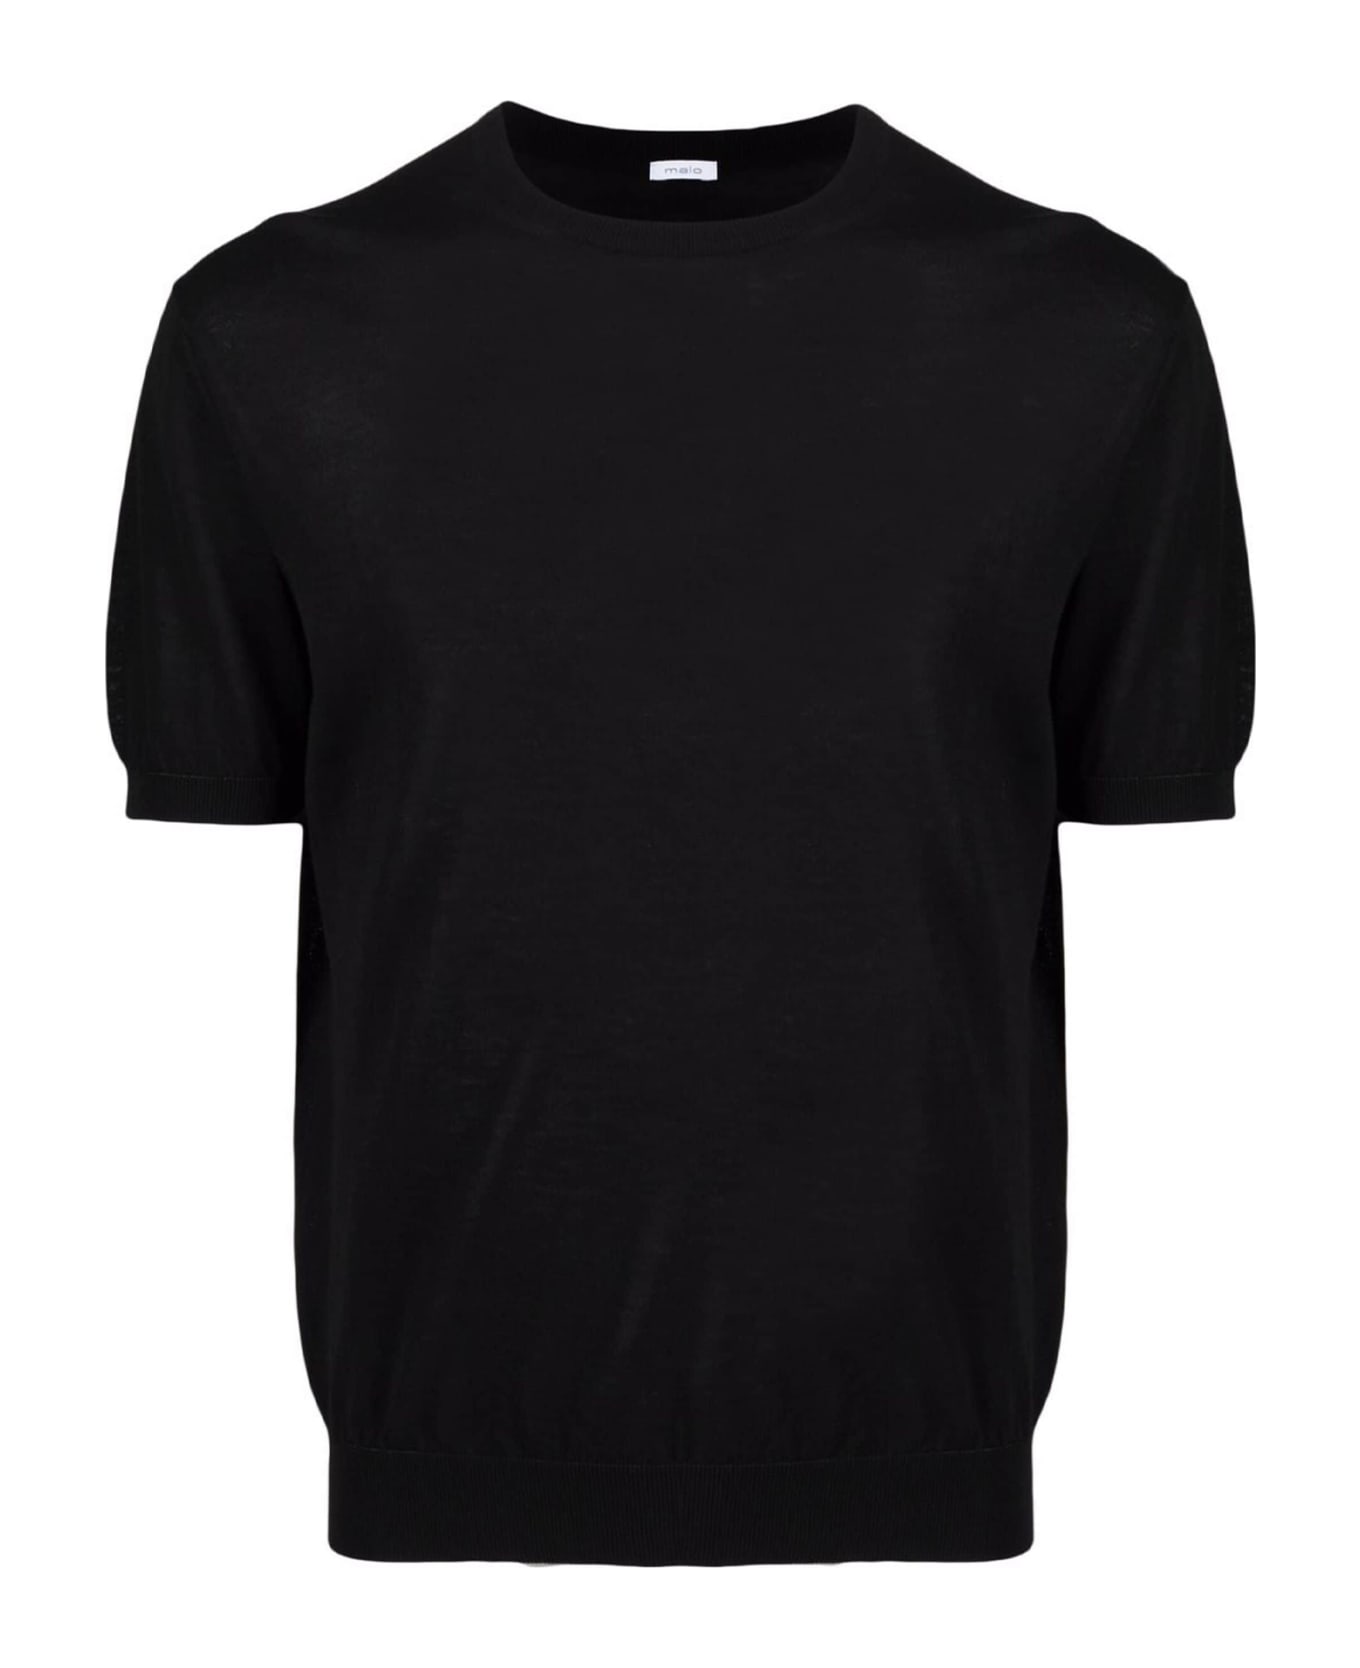 Malo Black Cotton T-shirt